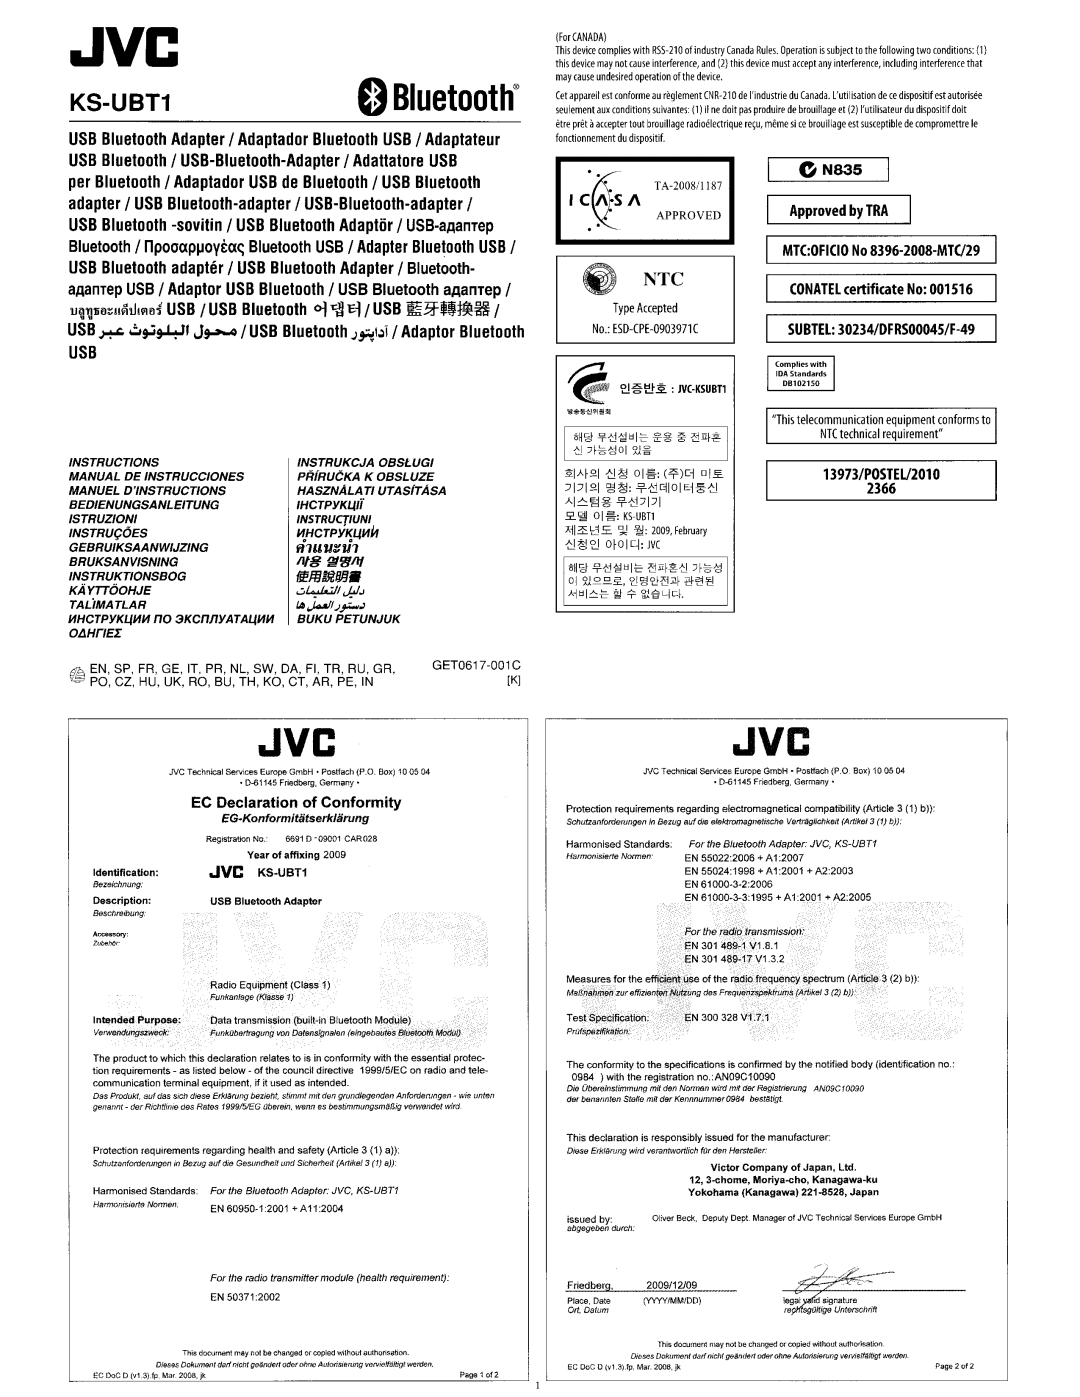 JVC KW-AVX830 manual KS-UBT1oBluetooth, fI1UUU1, fJElRlJlfPj, ON835, Approved by TRA, 1If§ f!!lJ1t, 13973/POSTEU2010 2366 